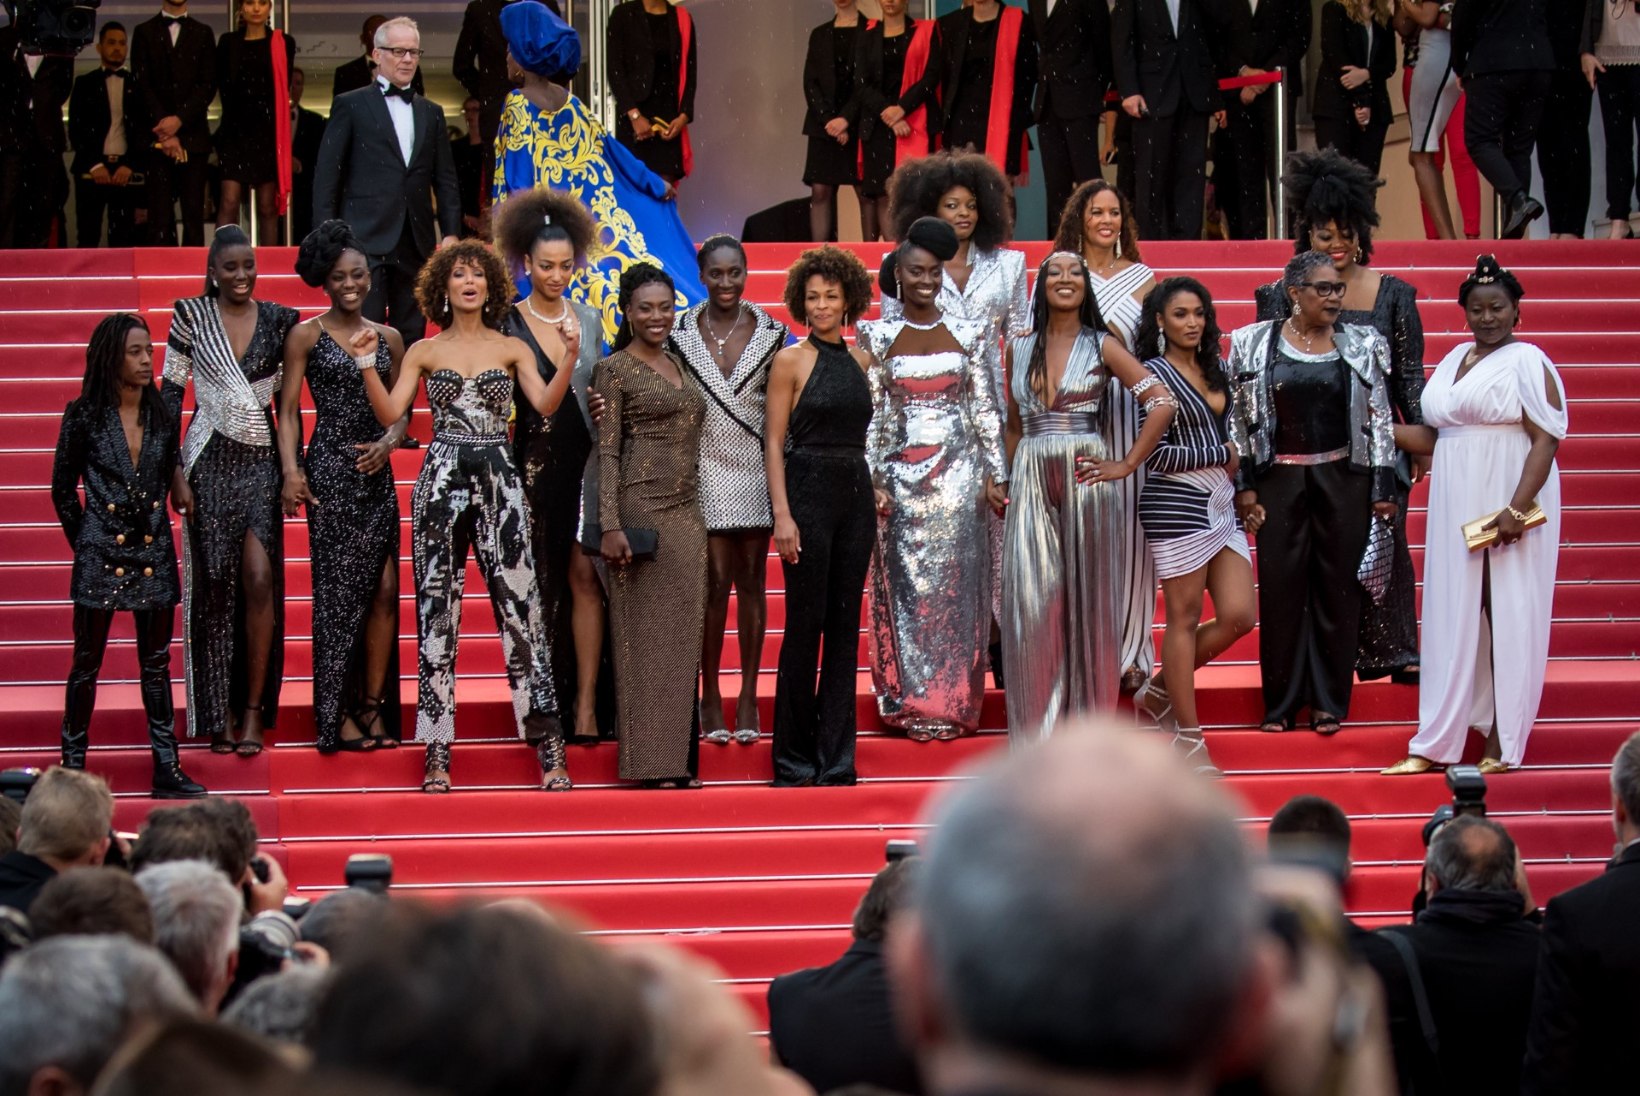 FOTOD | Mustanahalised näitlejannad protestisid Cannes'is rassismi vastu